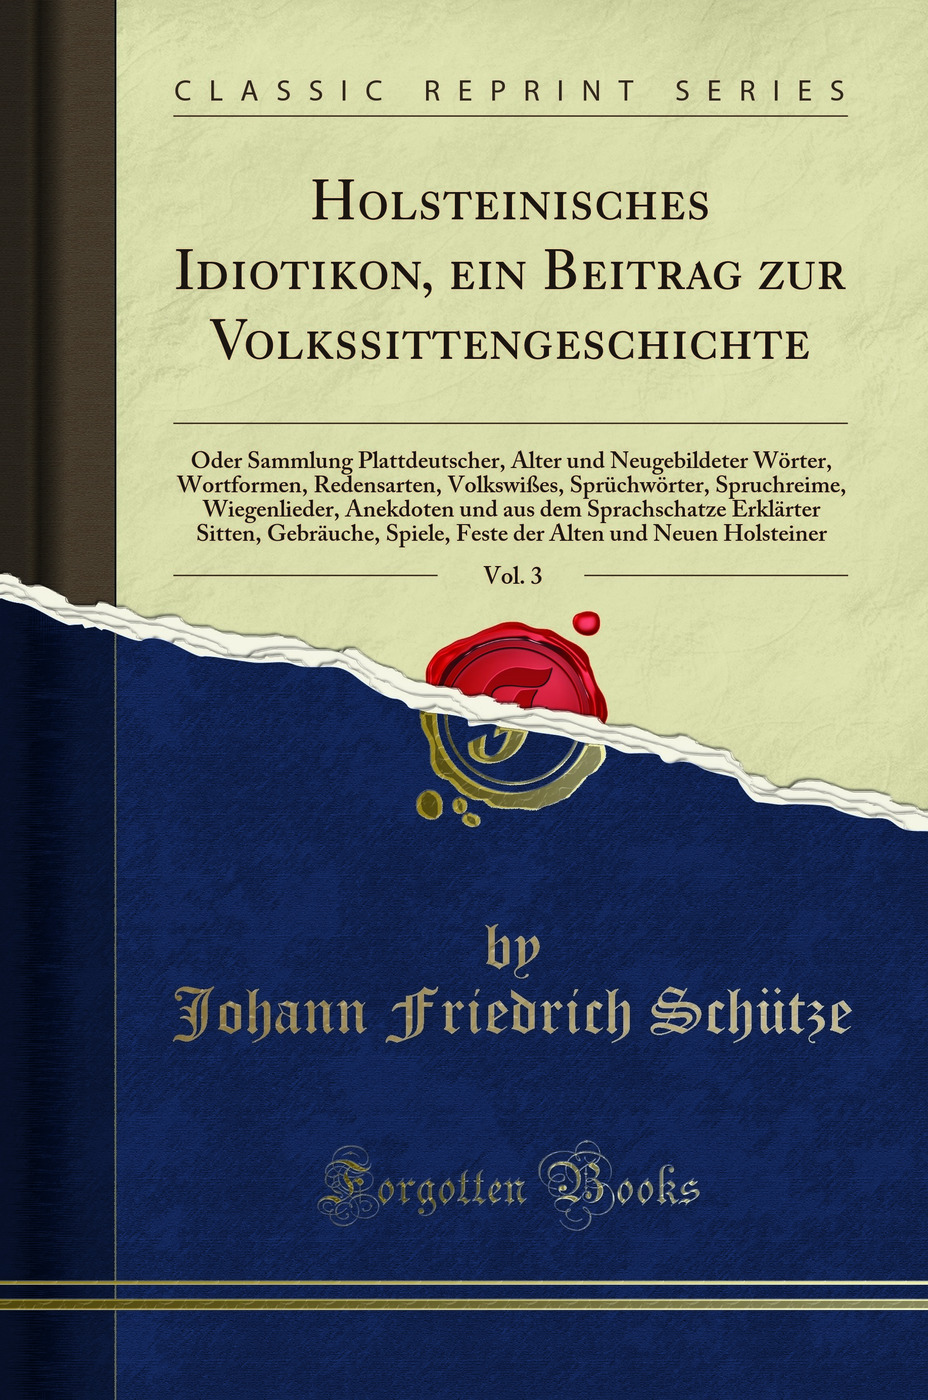 Holsteinisches Idiotikon, ein Beitrag zur Volkssittengeschichte, Vol. 3 - Johann Friedrich SchÃ¼tze